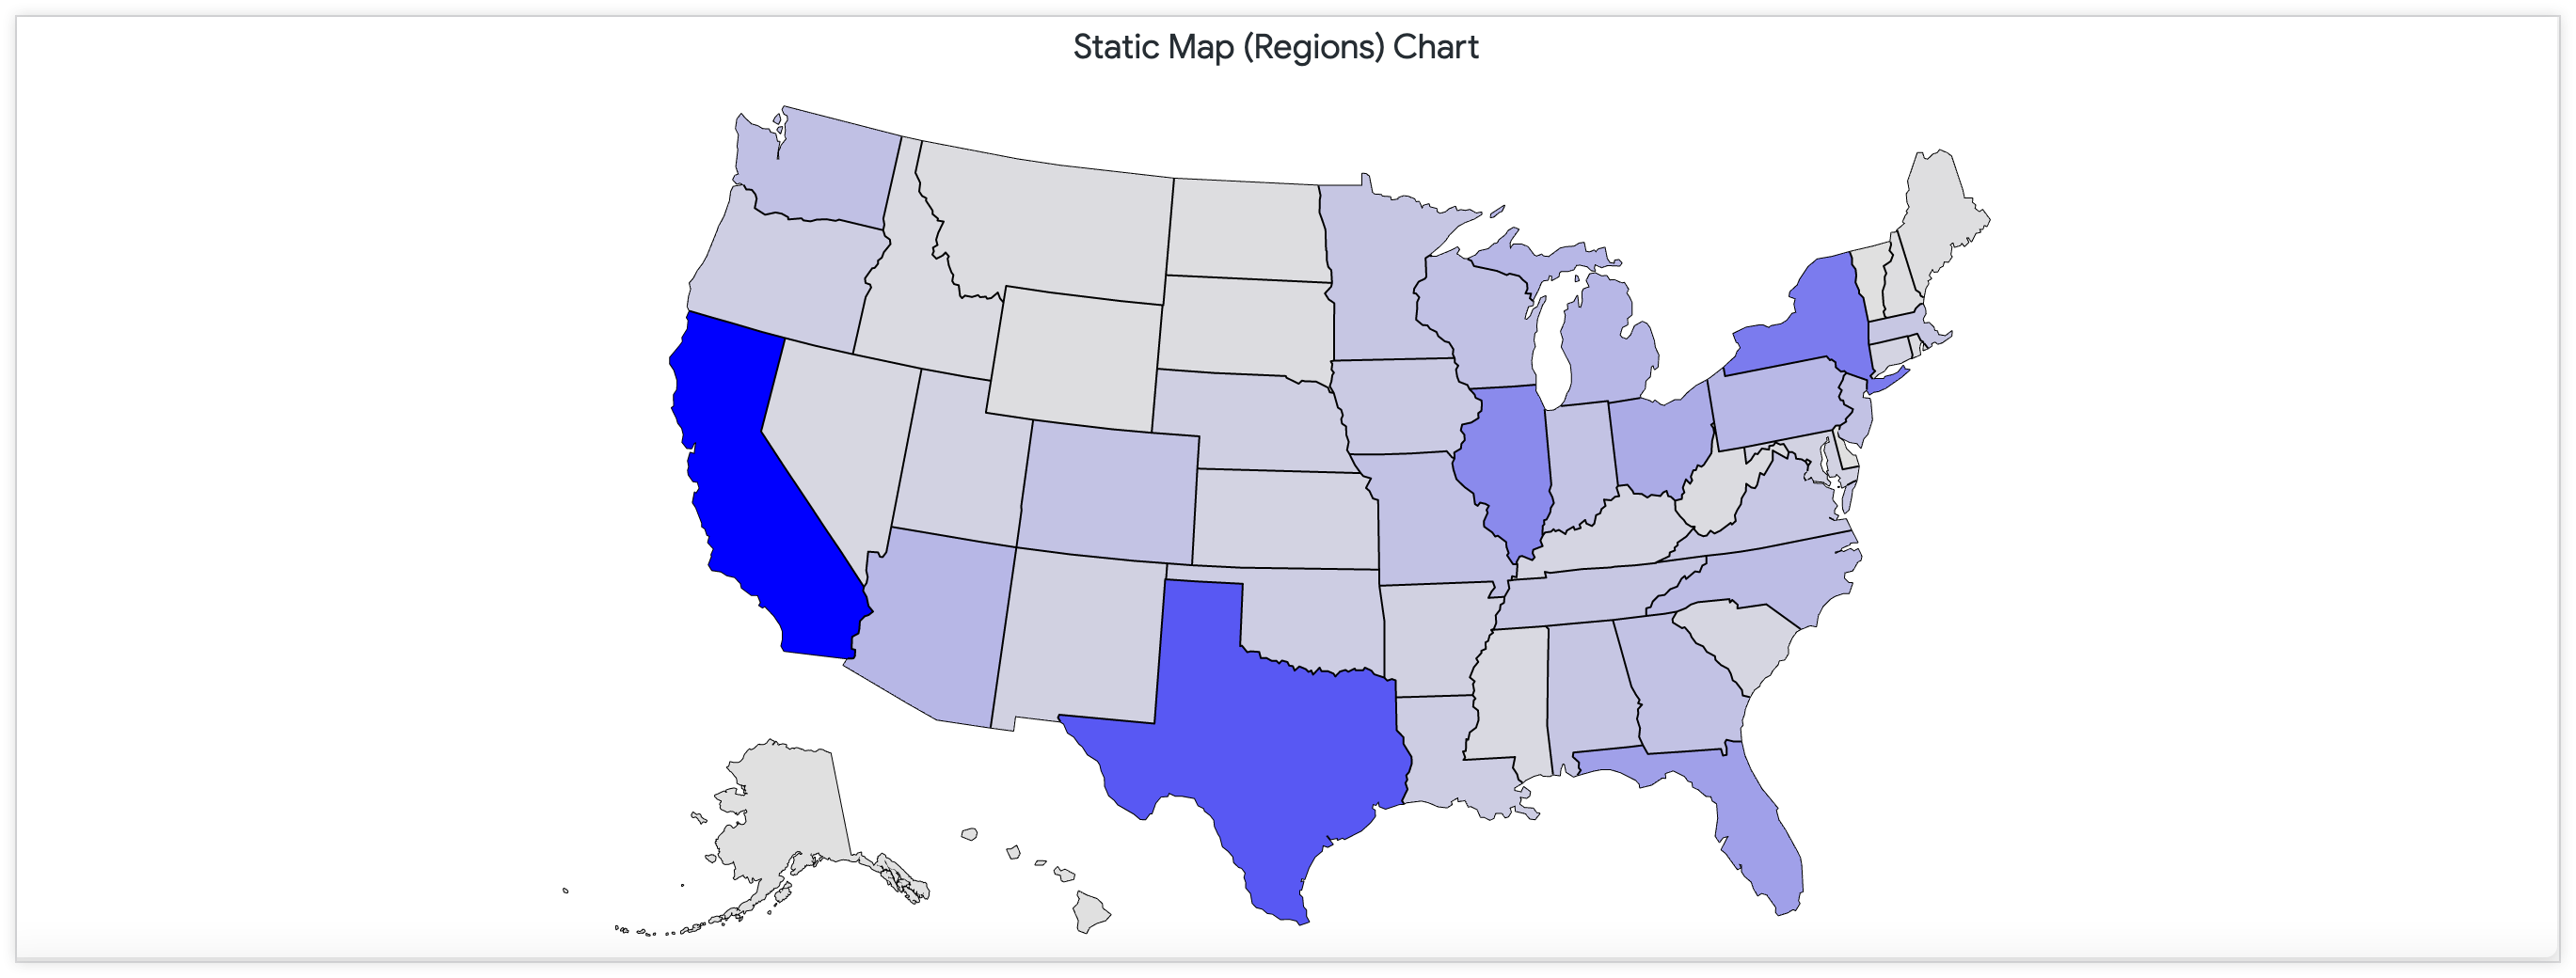 Mapa estático que muestra la cantidad de ubicaciones de tiendas en Estados Unidos a través de una paleta de colores continua.